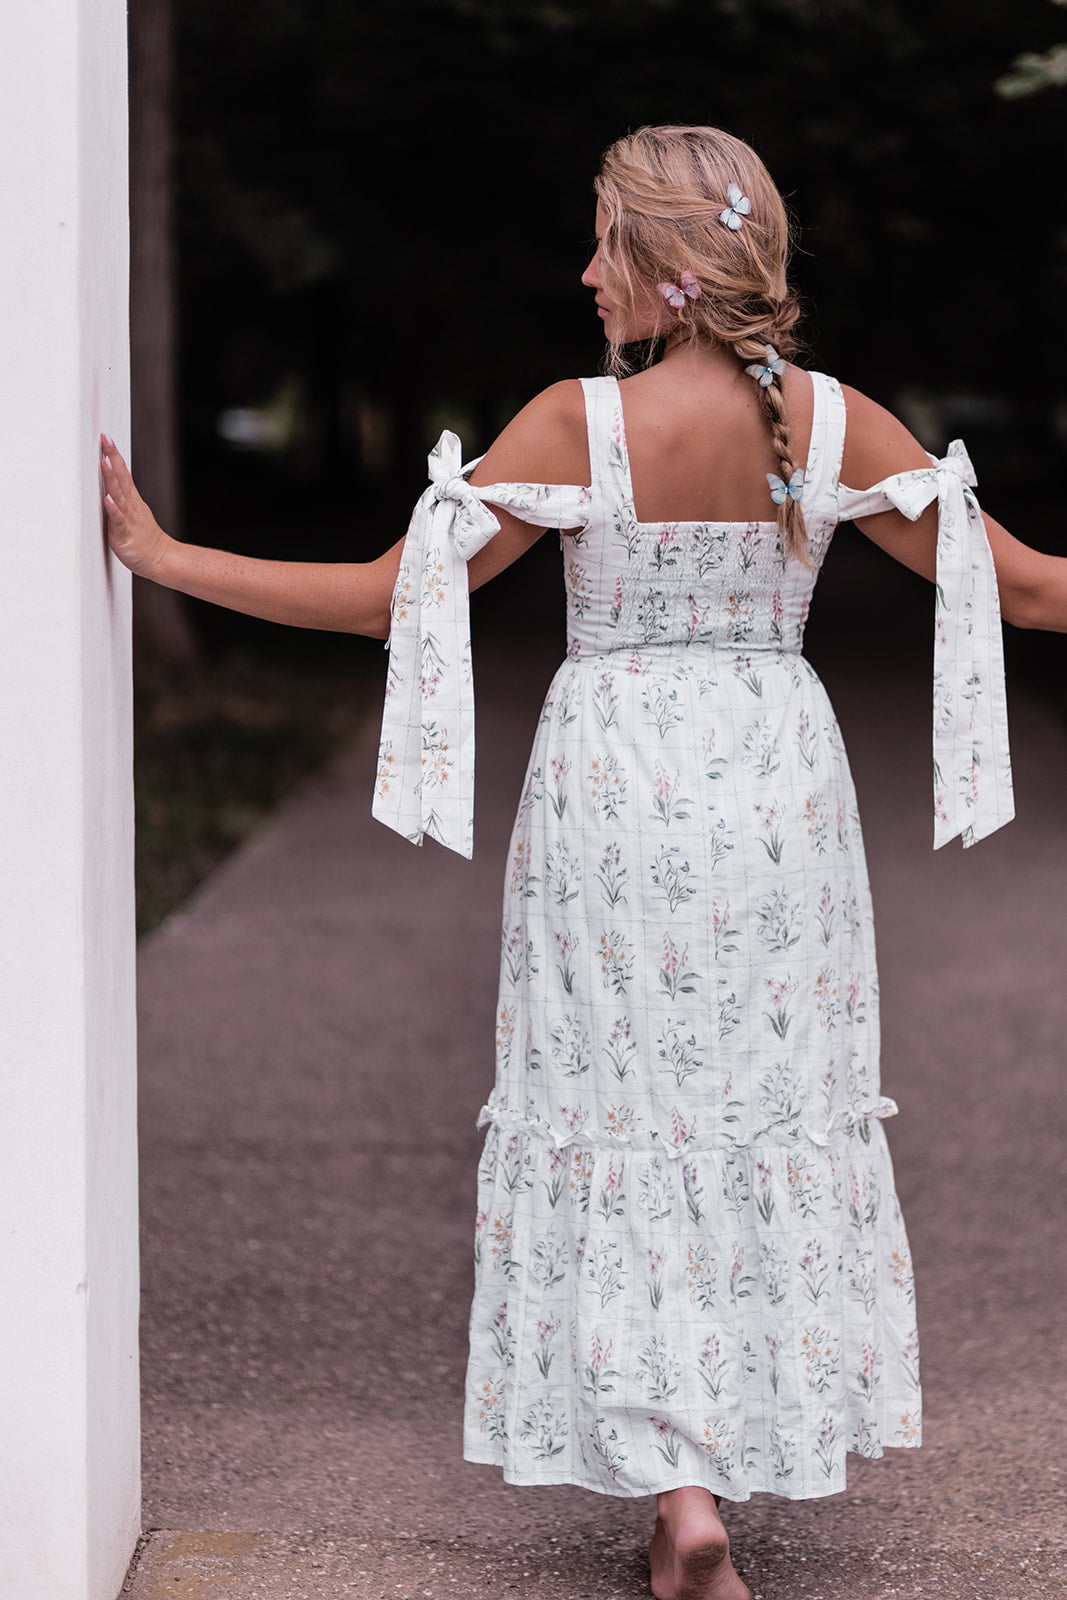 The Audrey Dress by Floraison